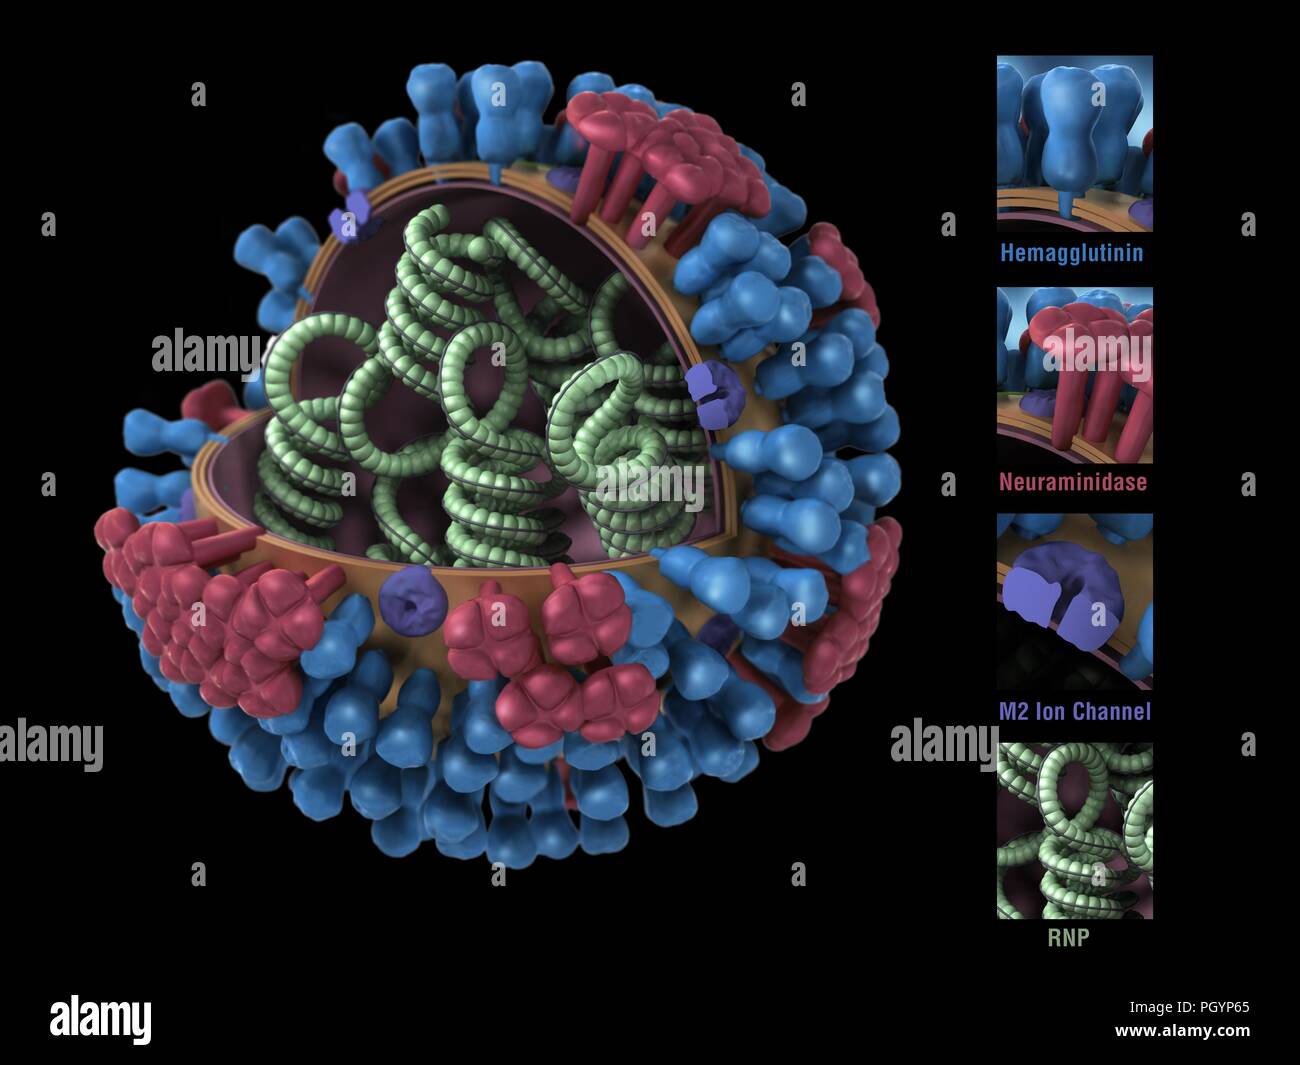 Computer generato un modello 3D, che mostra una sezione trasversale del verde RNP spirali, blue emaglutinina, neuraminidasi rosso e viola m2 canali ionici che costituiscono la struttura del virus A di influenza (Famiglia Orthomyxovirus) Immagine cortesia CDC/Douglas Giordania, 2009. () Foto Stock